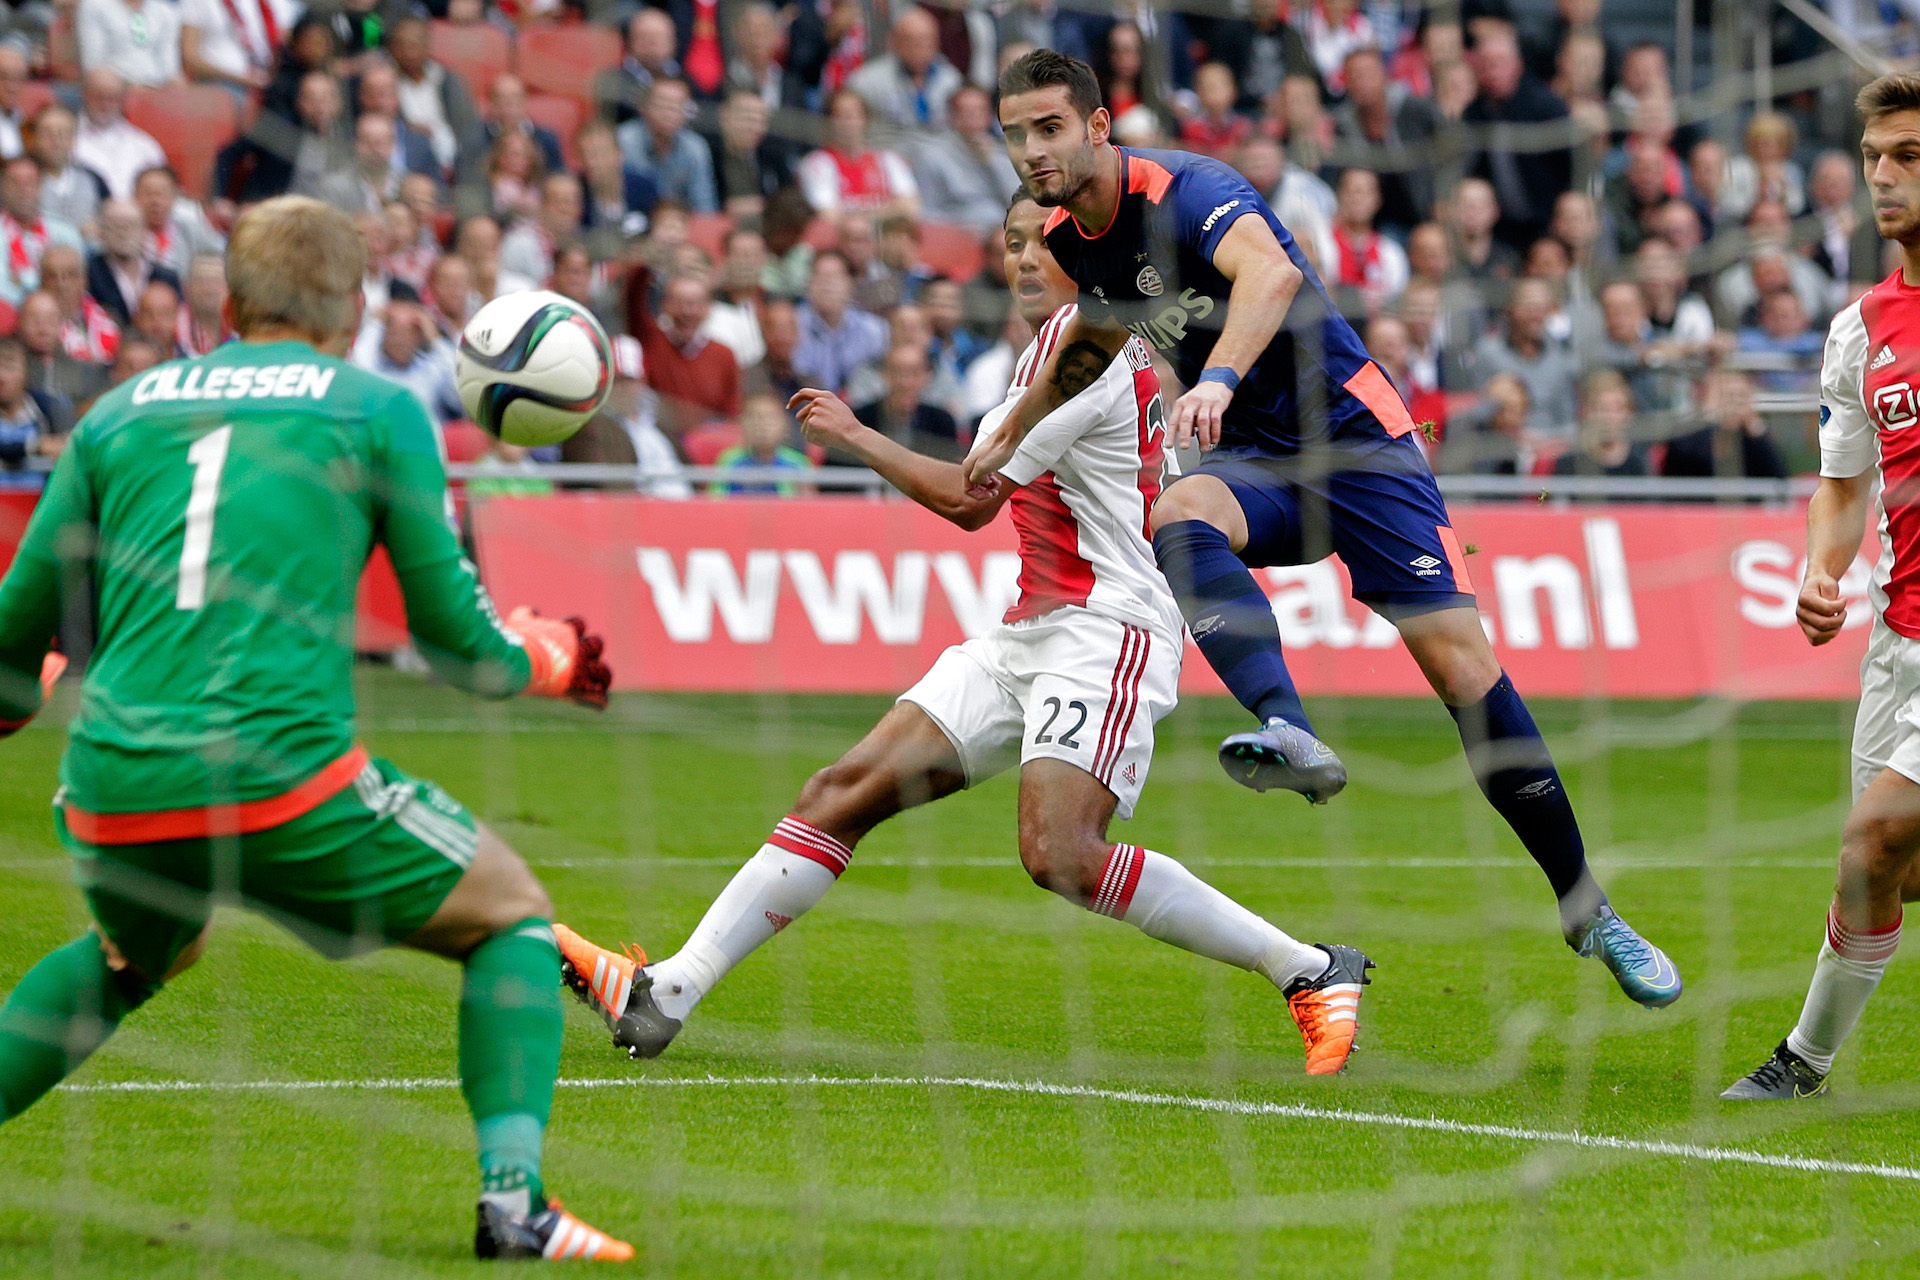 Op 4 oktober 2015 won PSV met 2-1 van Ajax. Beide doelpunten werden gemaakt door Gastón Pereiro